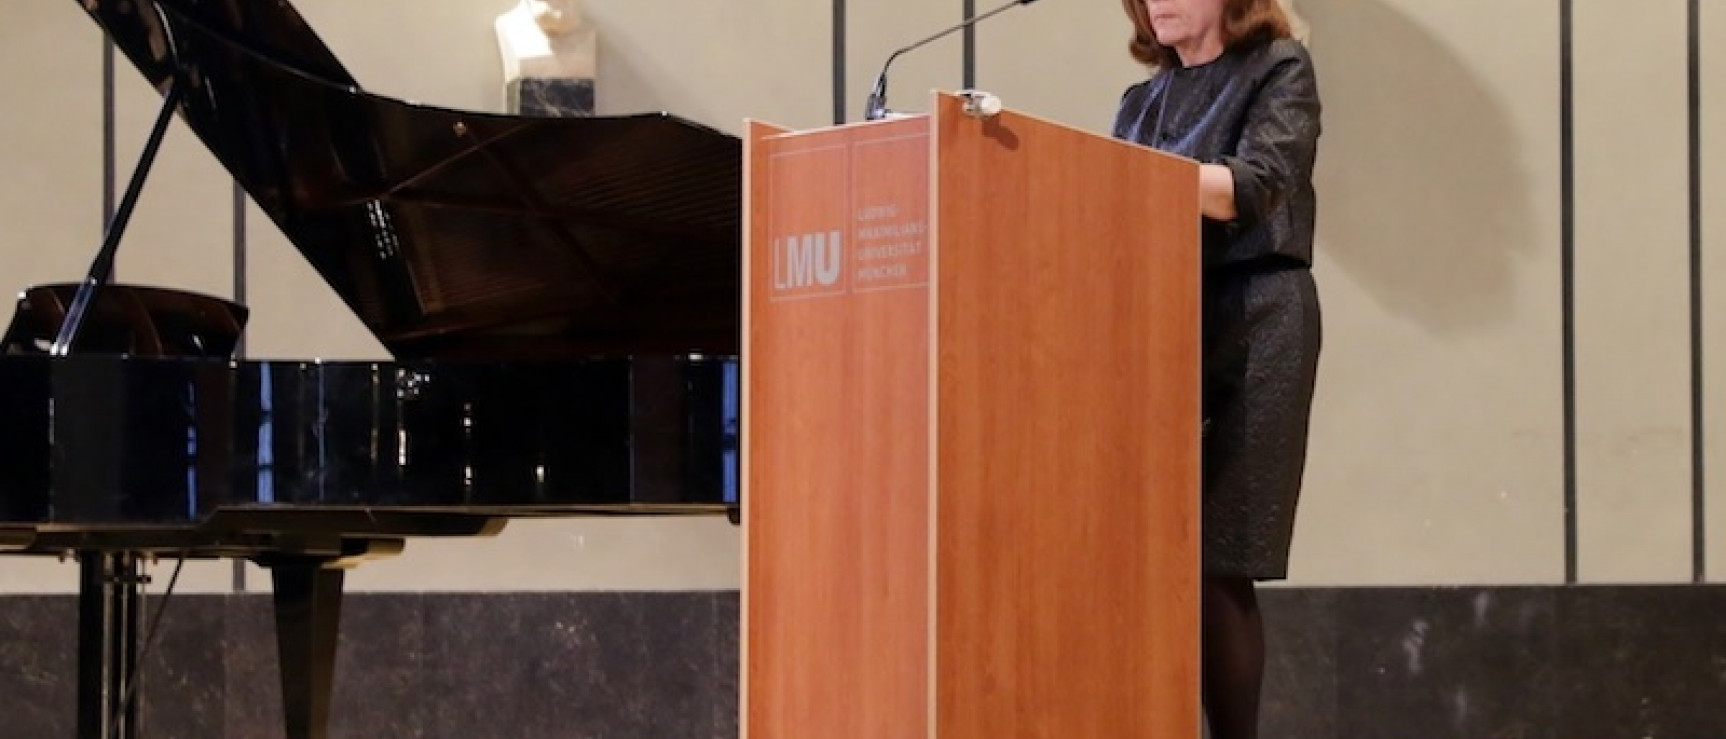 Aurora Egido durante la conferencia inaugural en Múnich. Foto: Annette Krauss.